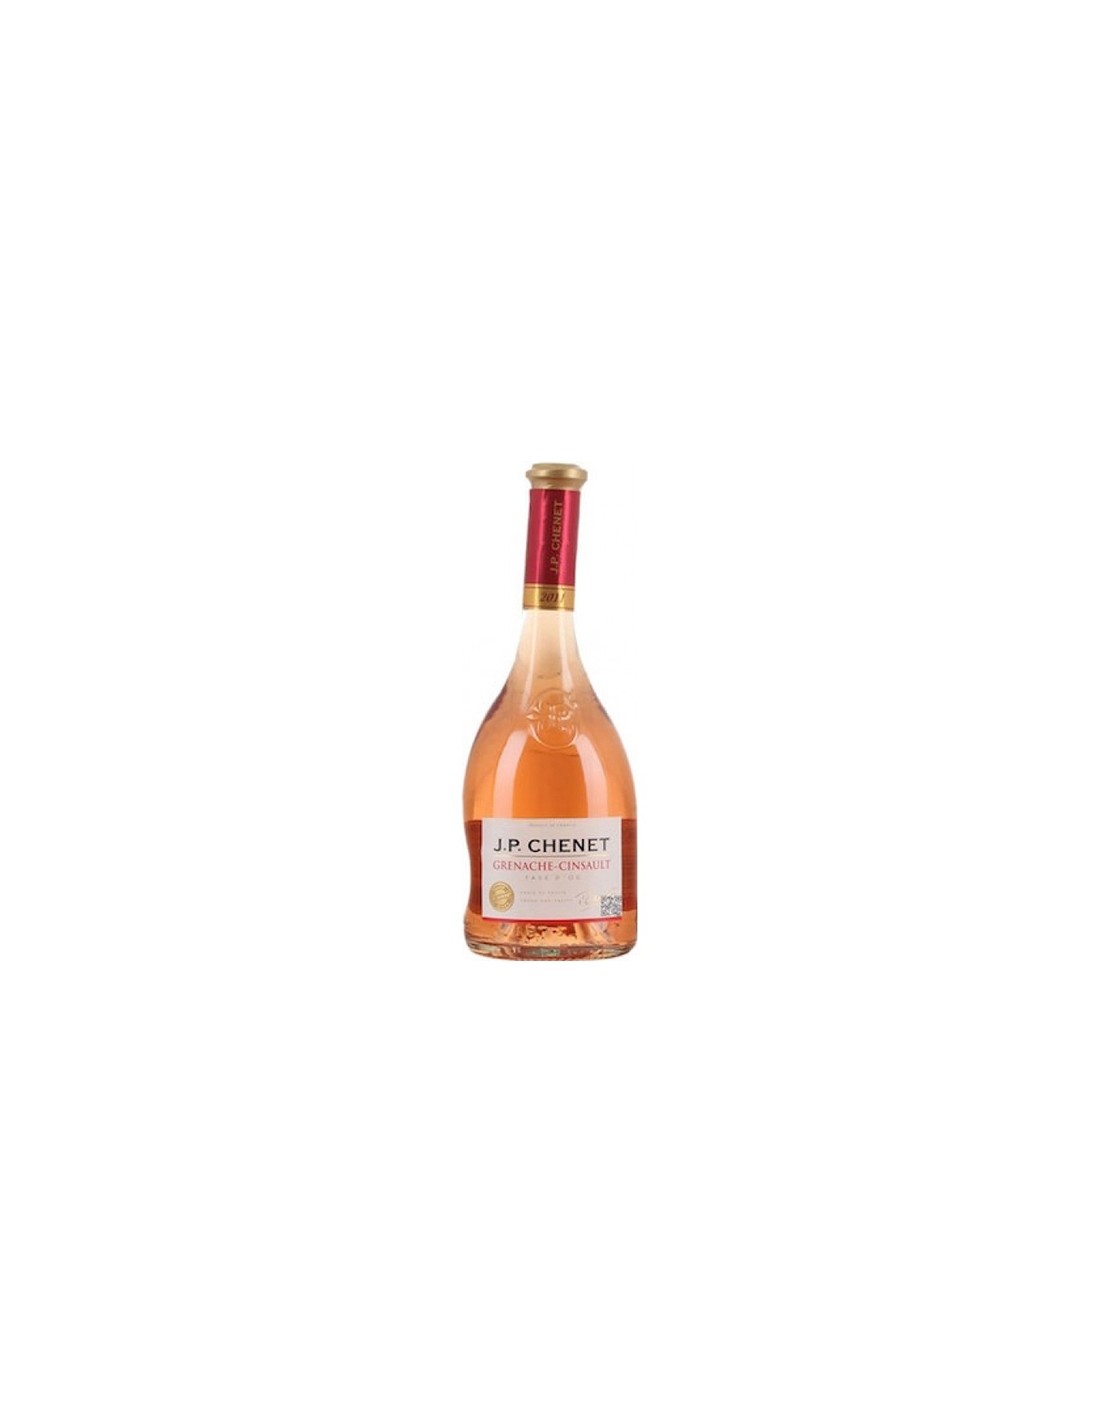 Vin roze sec, Grenache Cinsault, JP Chenet Pays d’Oc, 0.75L, 12.5% alc., Franta alcooldiscount.ro